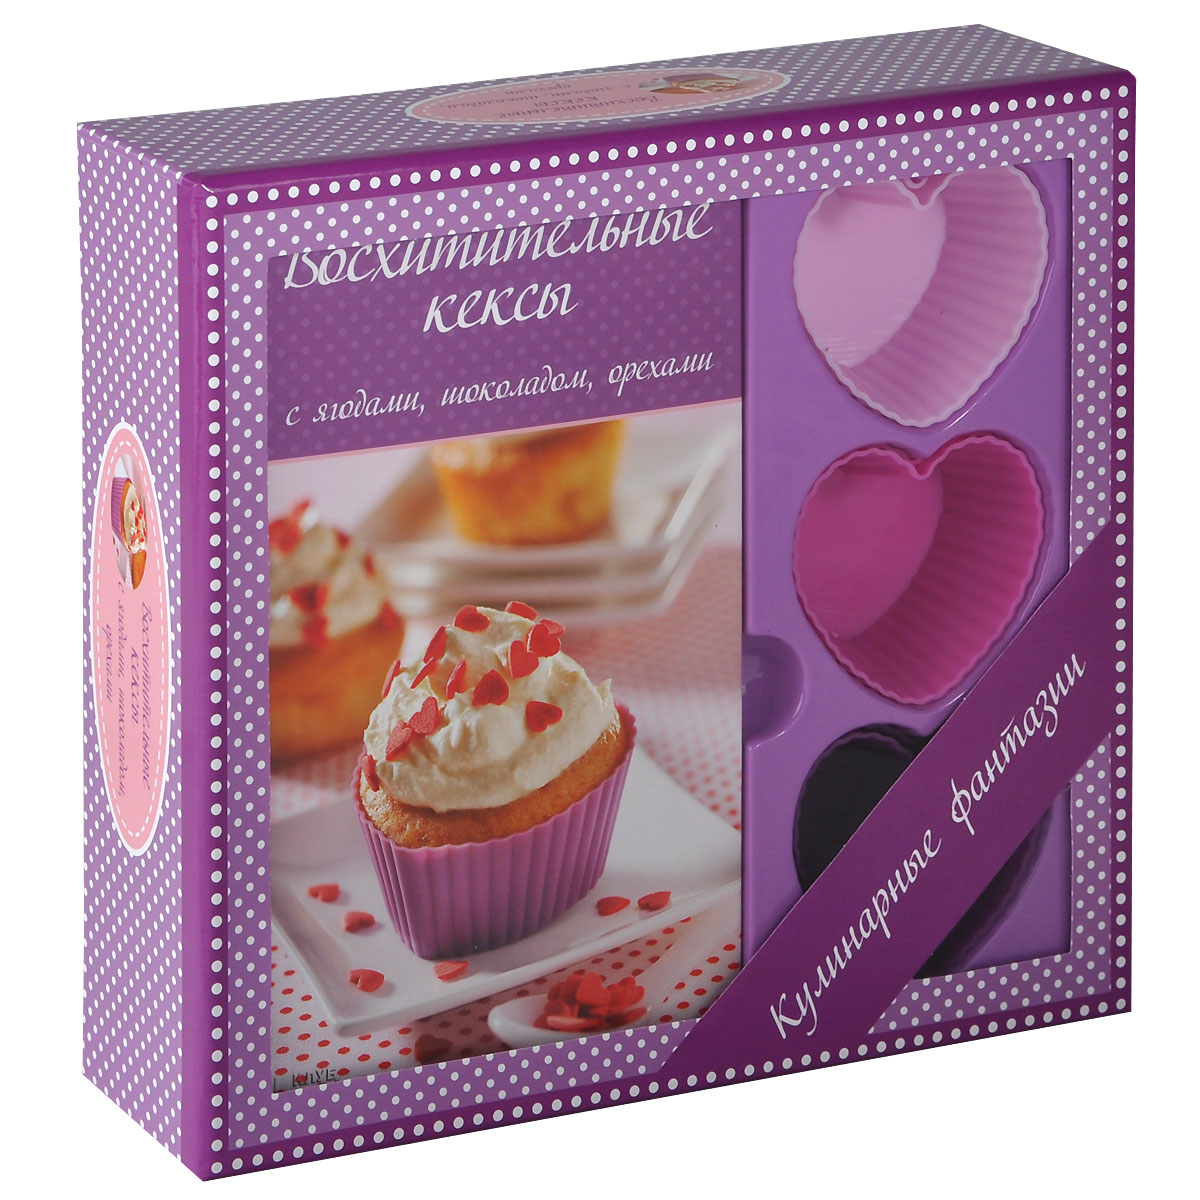 Книга Восхитительные кексы с ягодами, шоколадом, орехами (+ 6 форм для выпечки) - купить в книжном интернет магазине OZON.ru по выгодной цене